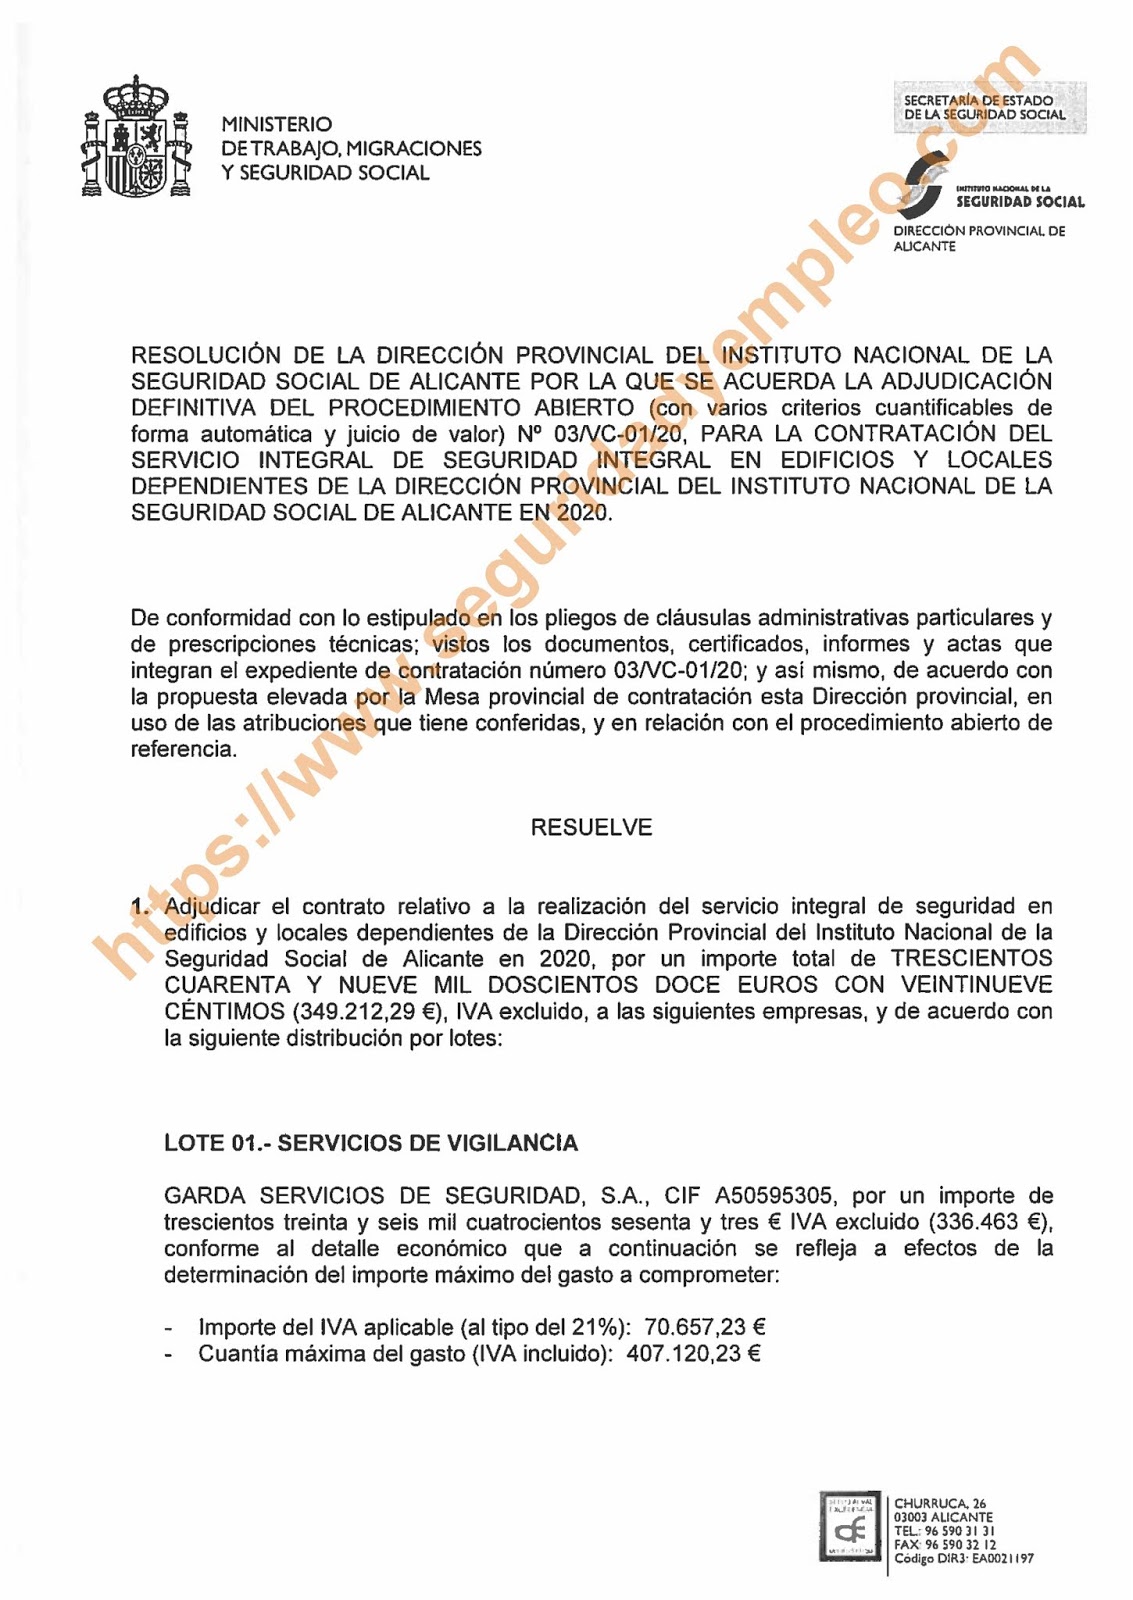 Garda (lote 1) y Eulen (lote 2) se adjudica el contrato de   Sistema integral de seguridad de la Dirección Provincial del Instituto Nacional de la Seguridad Social de Alicante 2020